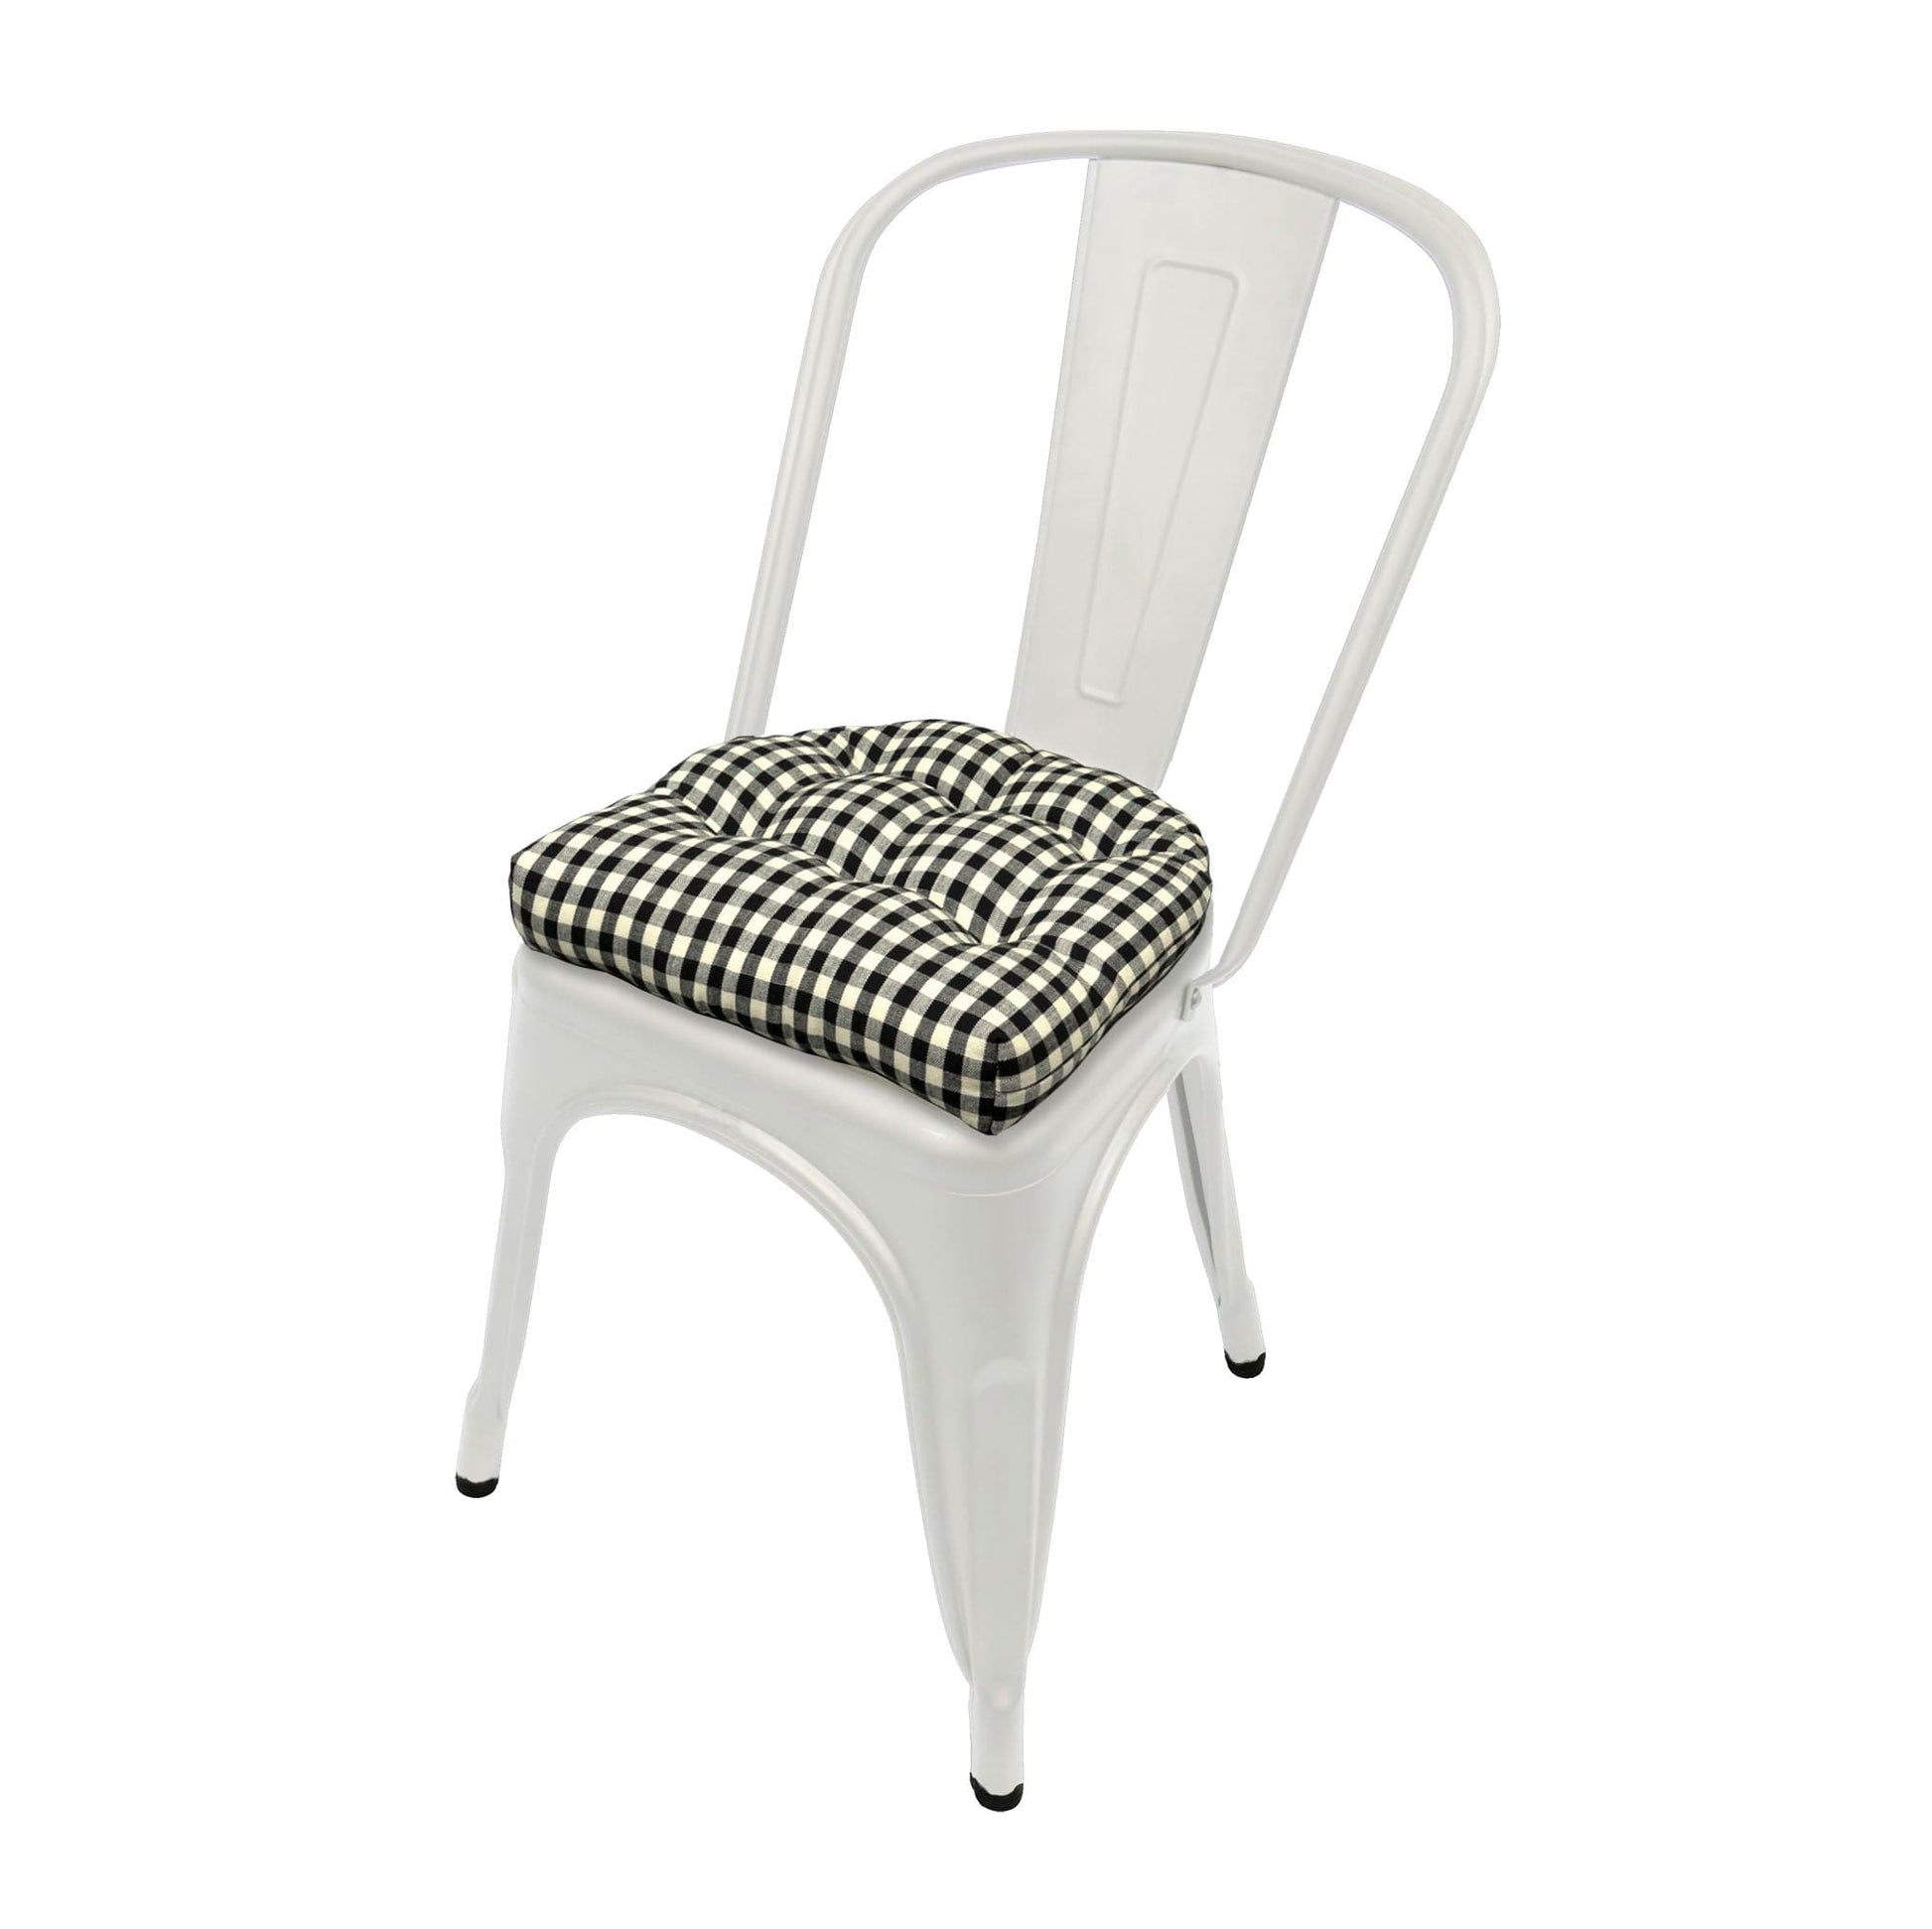 Farmhouse Check Black & White Industrial Chair Cushion - Latex Foam Fill - Barnett Home Decor 